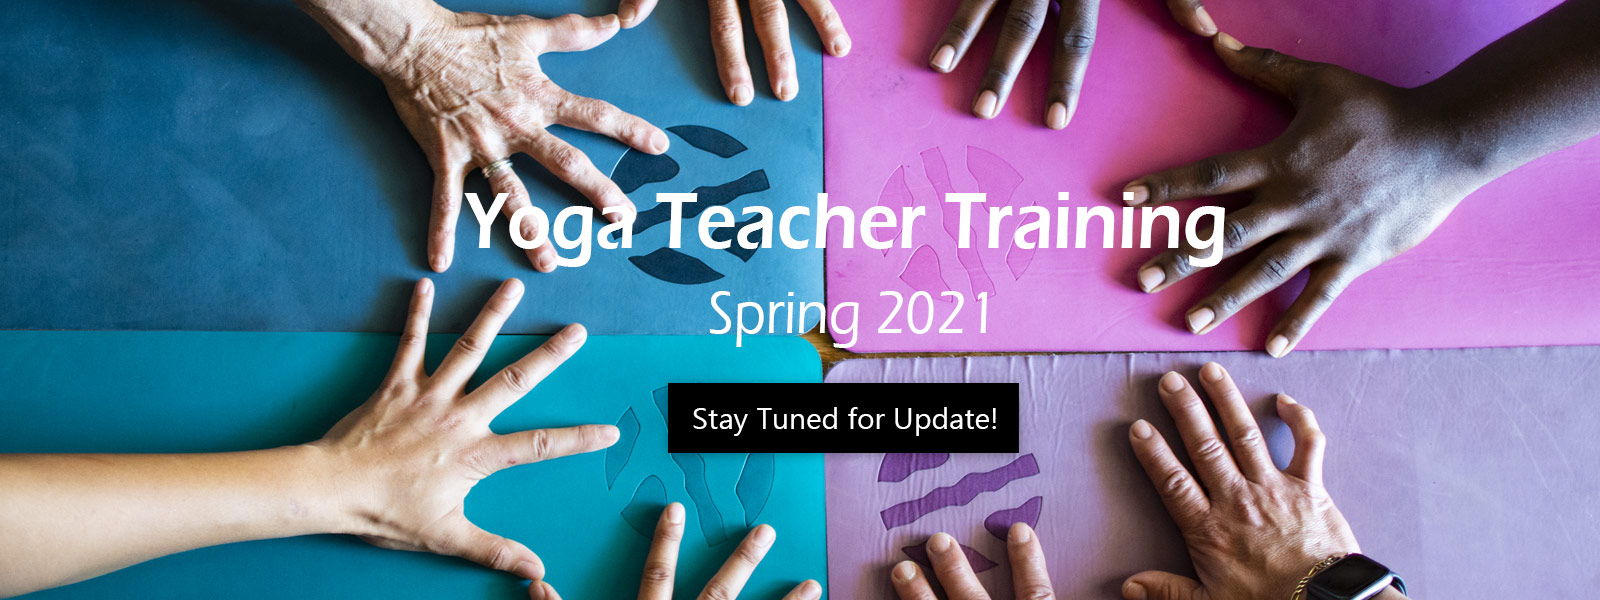 Yoga Teacher Training - Spring 2021 open now